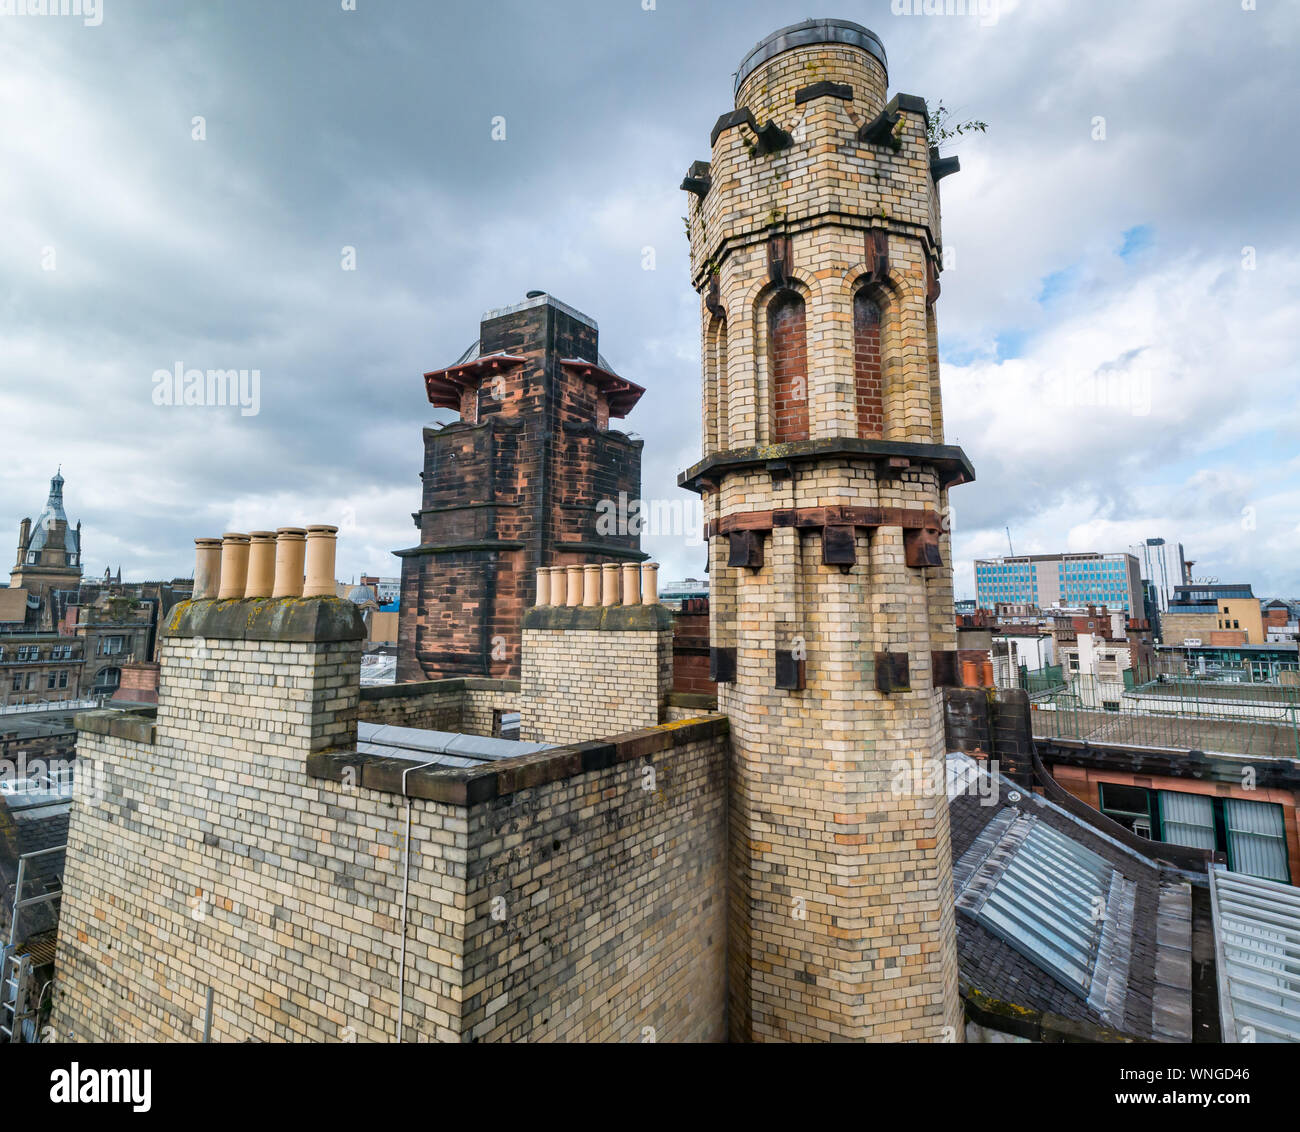 Glasgow Herald sur le toit du bâtiment par Charles Rennie Mackintosh, maintenant le phare, Glasgow, Écosse, Royaume-Uni Banque D'Images